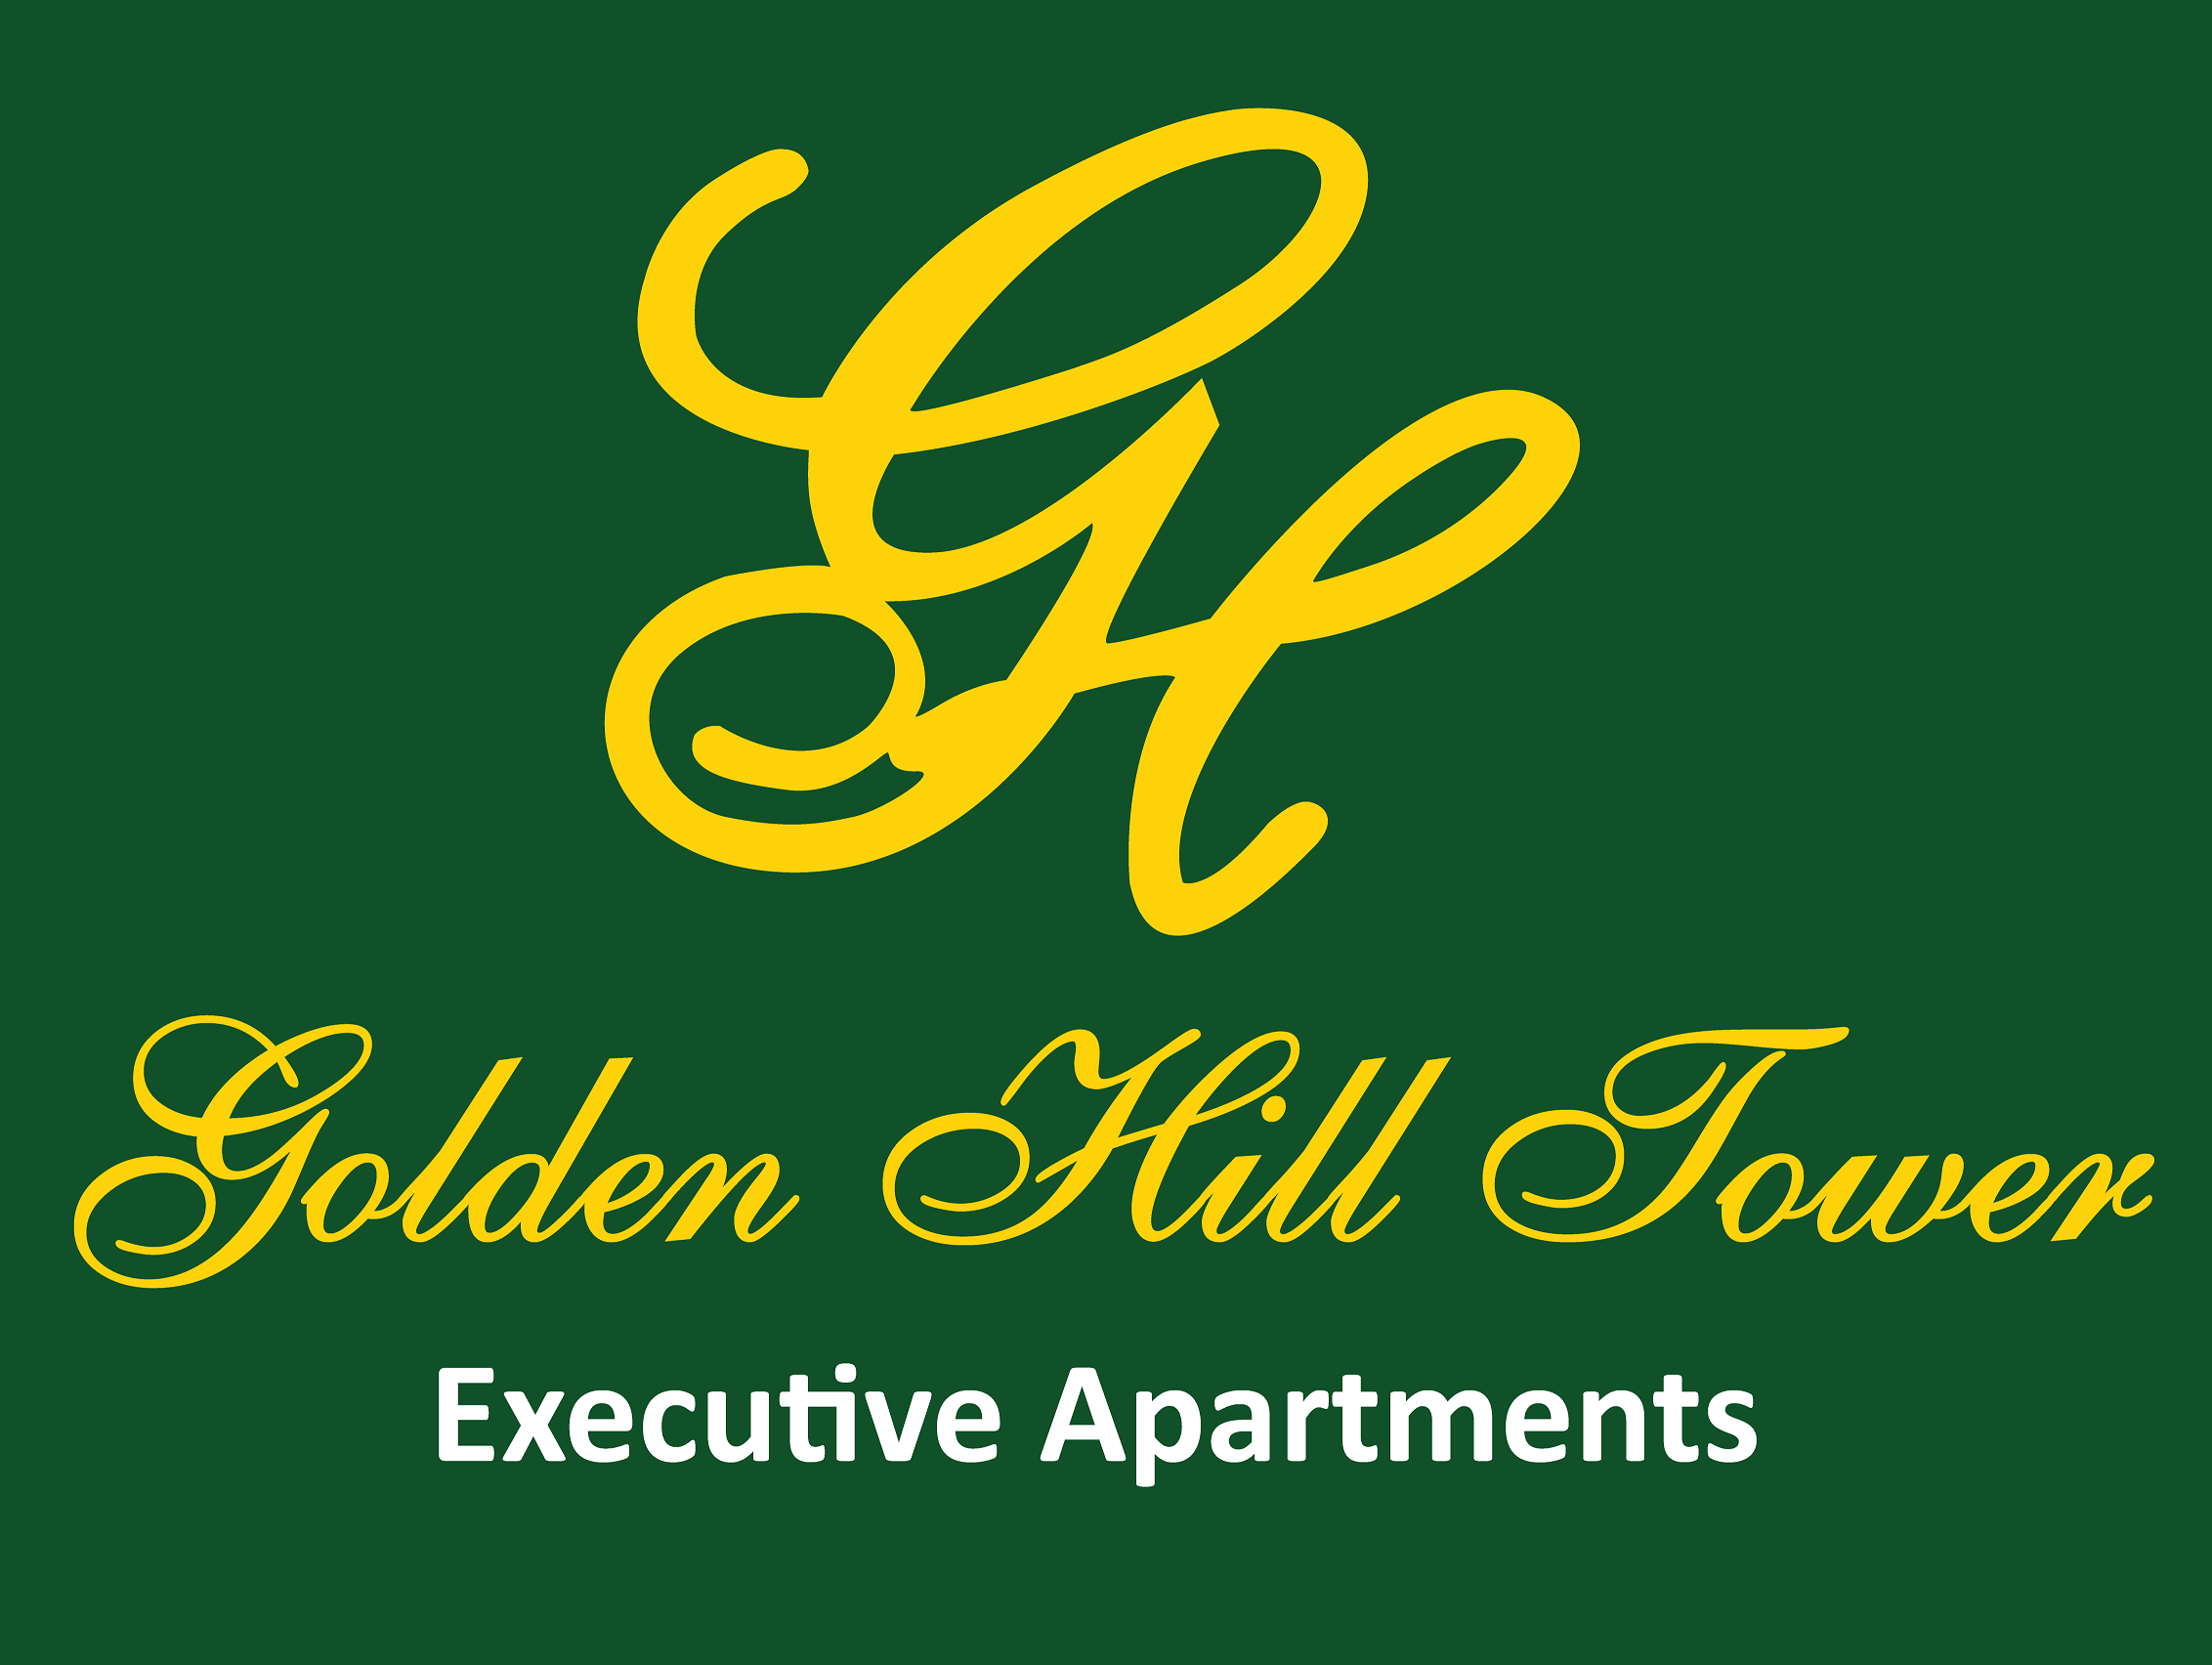 Golden Hill Tower